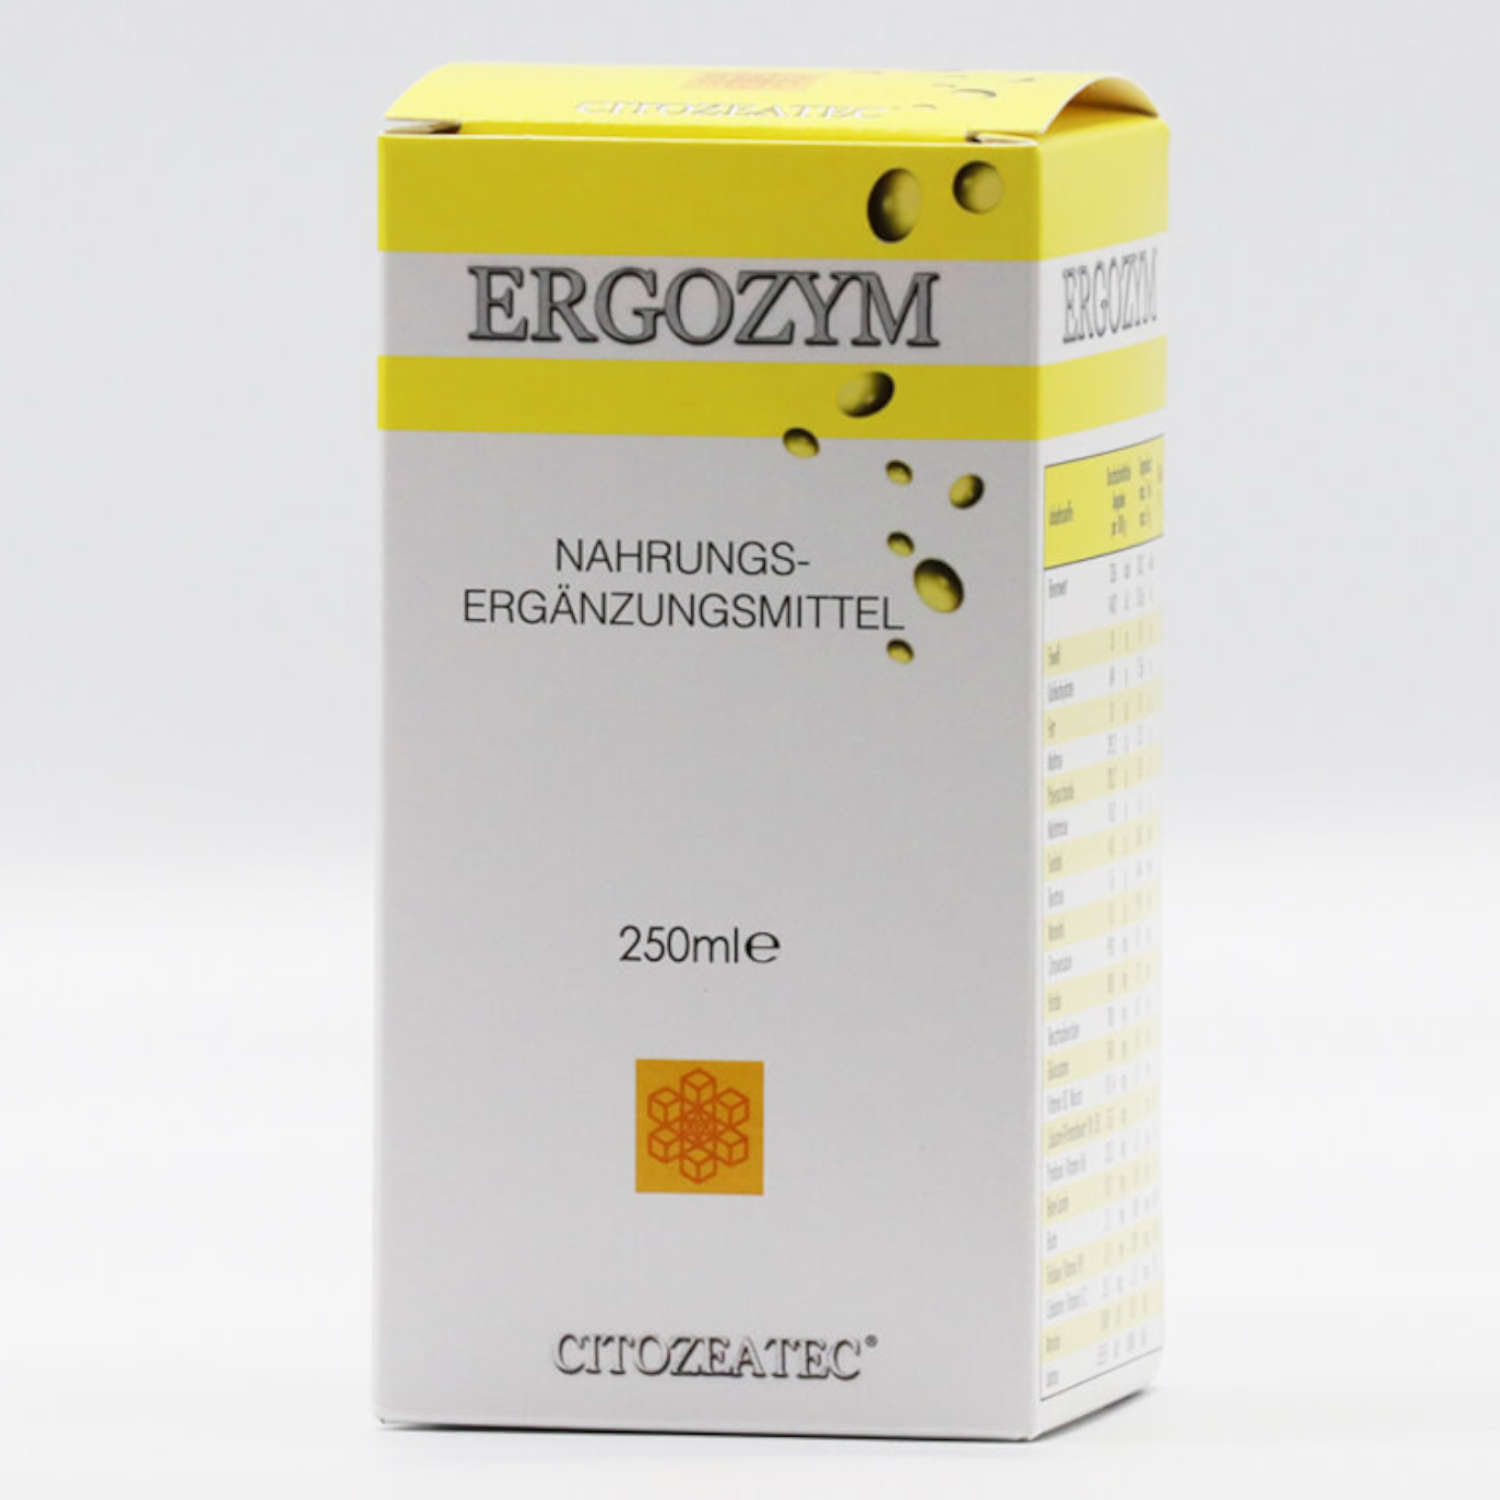 Citozeatec Ergozym - Etikett Vorderseite